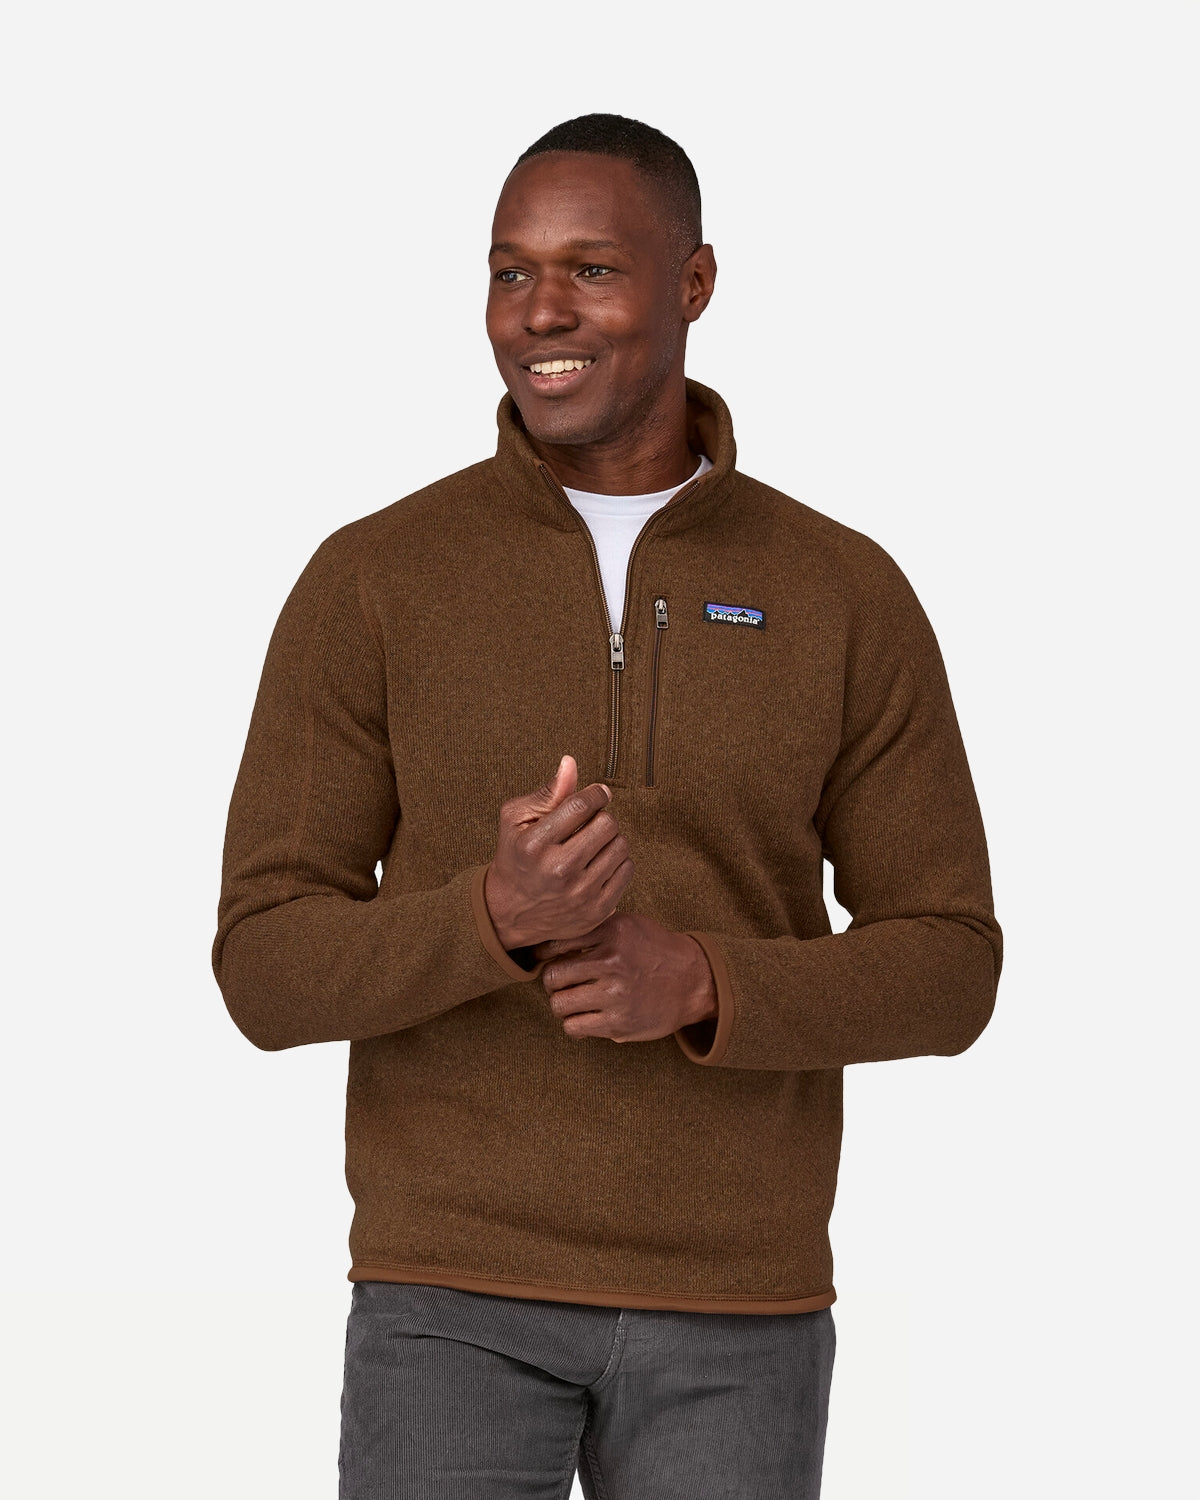 M's Better Sweater 1/4 Zip - Moose Brown